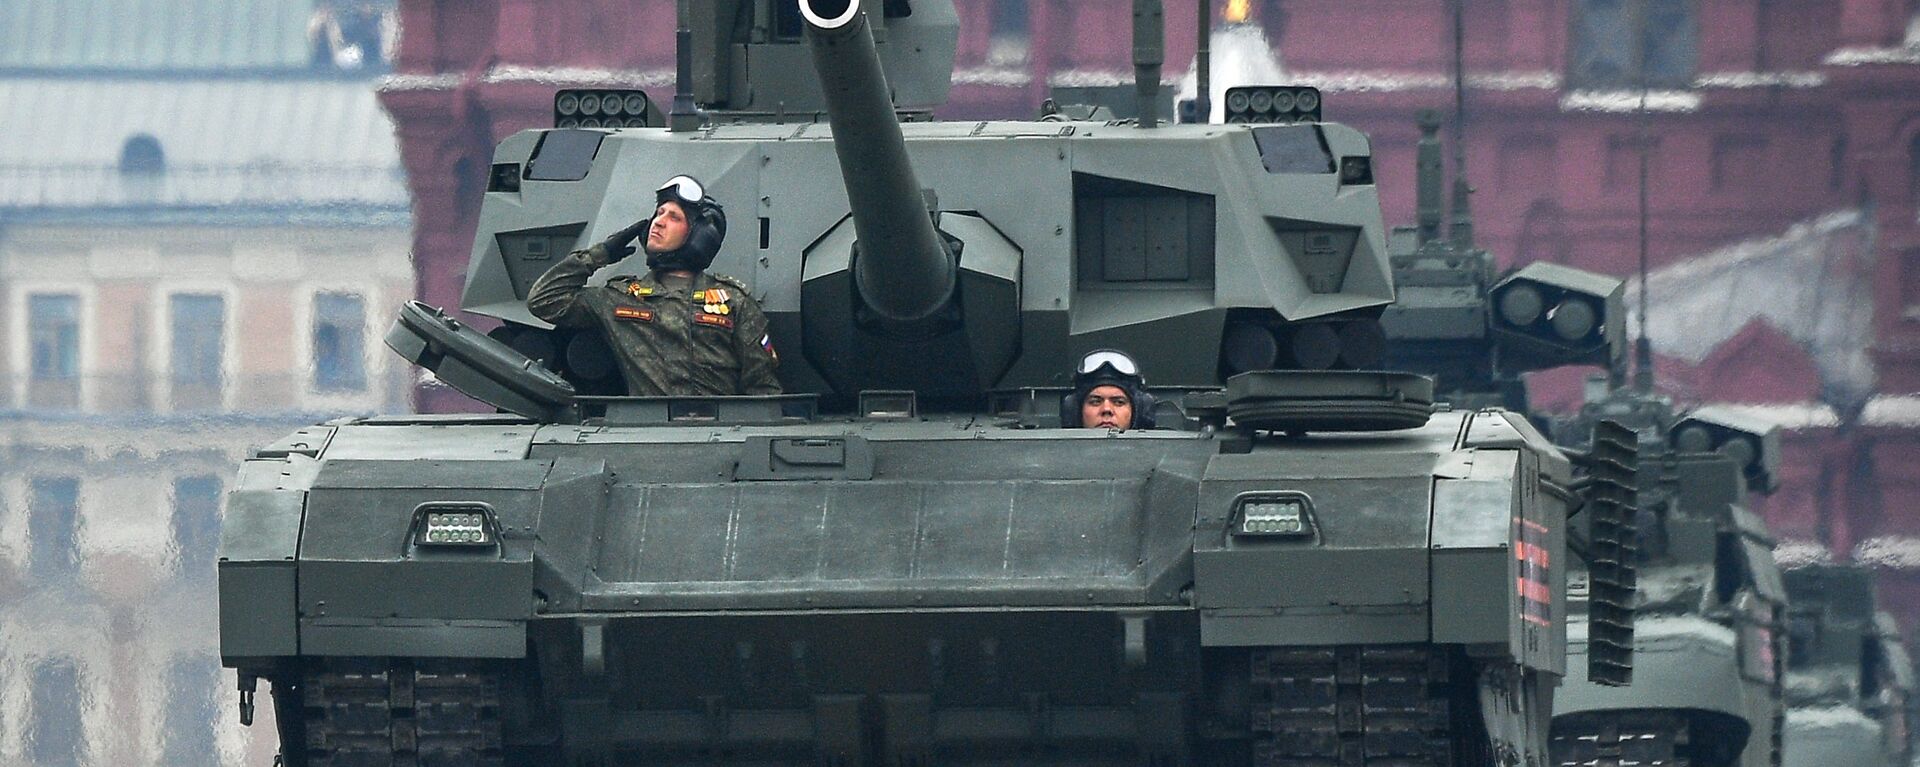 Тенк Т-14 „Армата“ на Црвеном тргу у Москви, на паради поводом Дана победе над фашизмом - Sputnik Србија, 1920, 28.08.2021